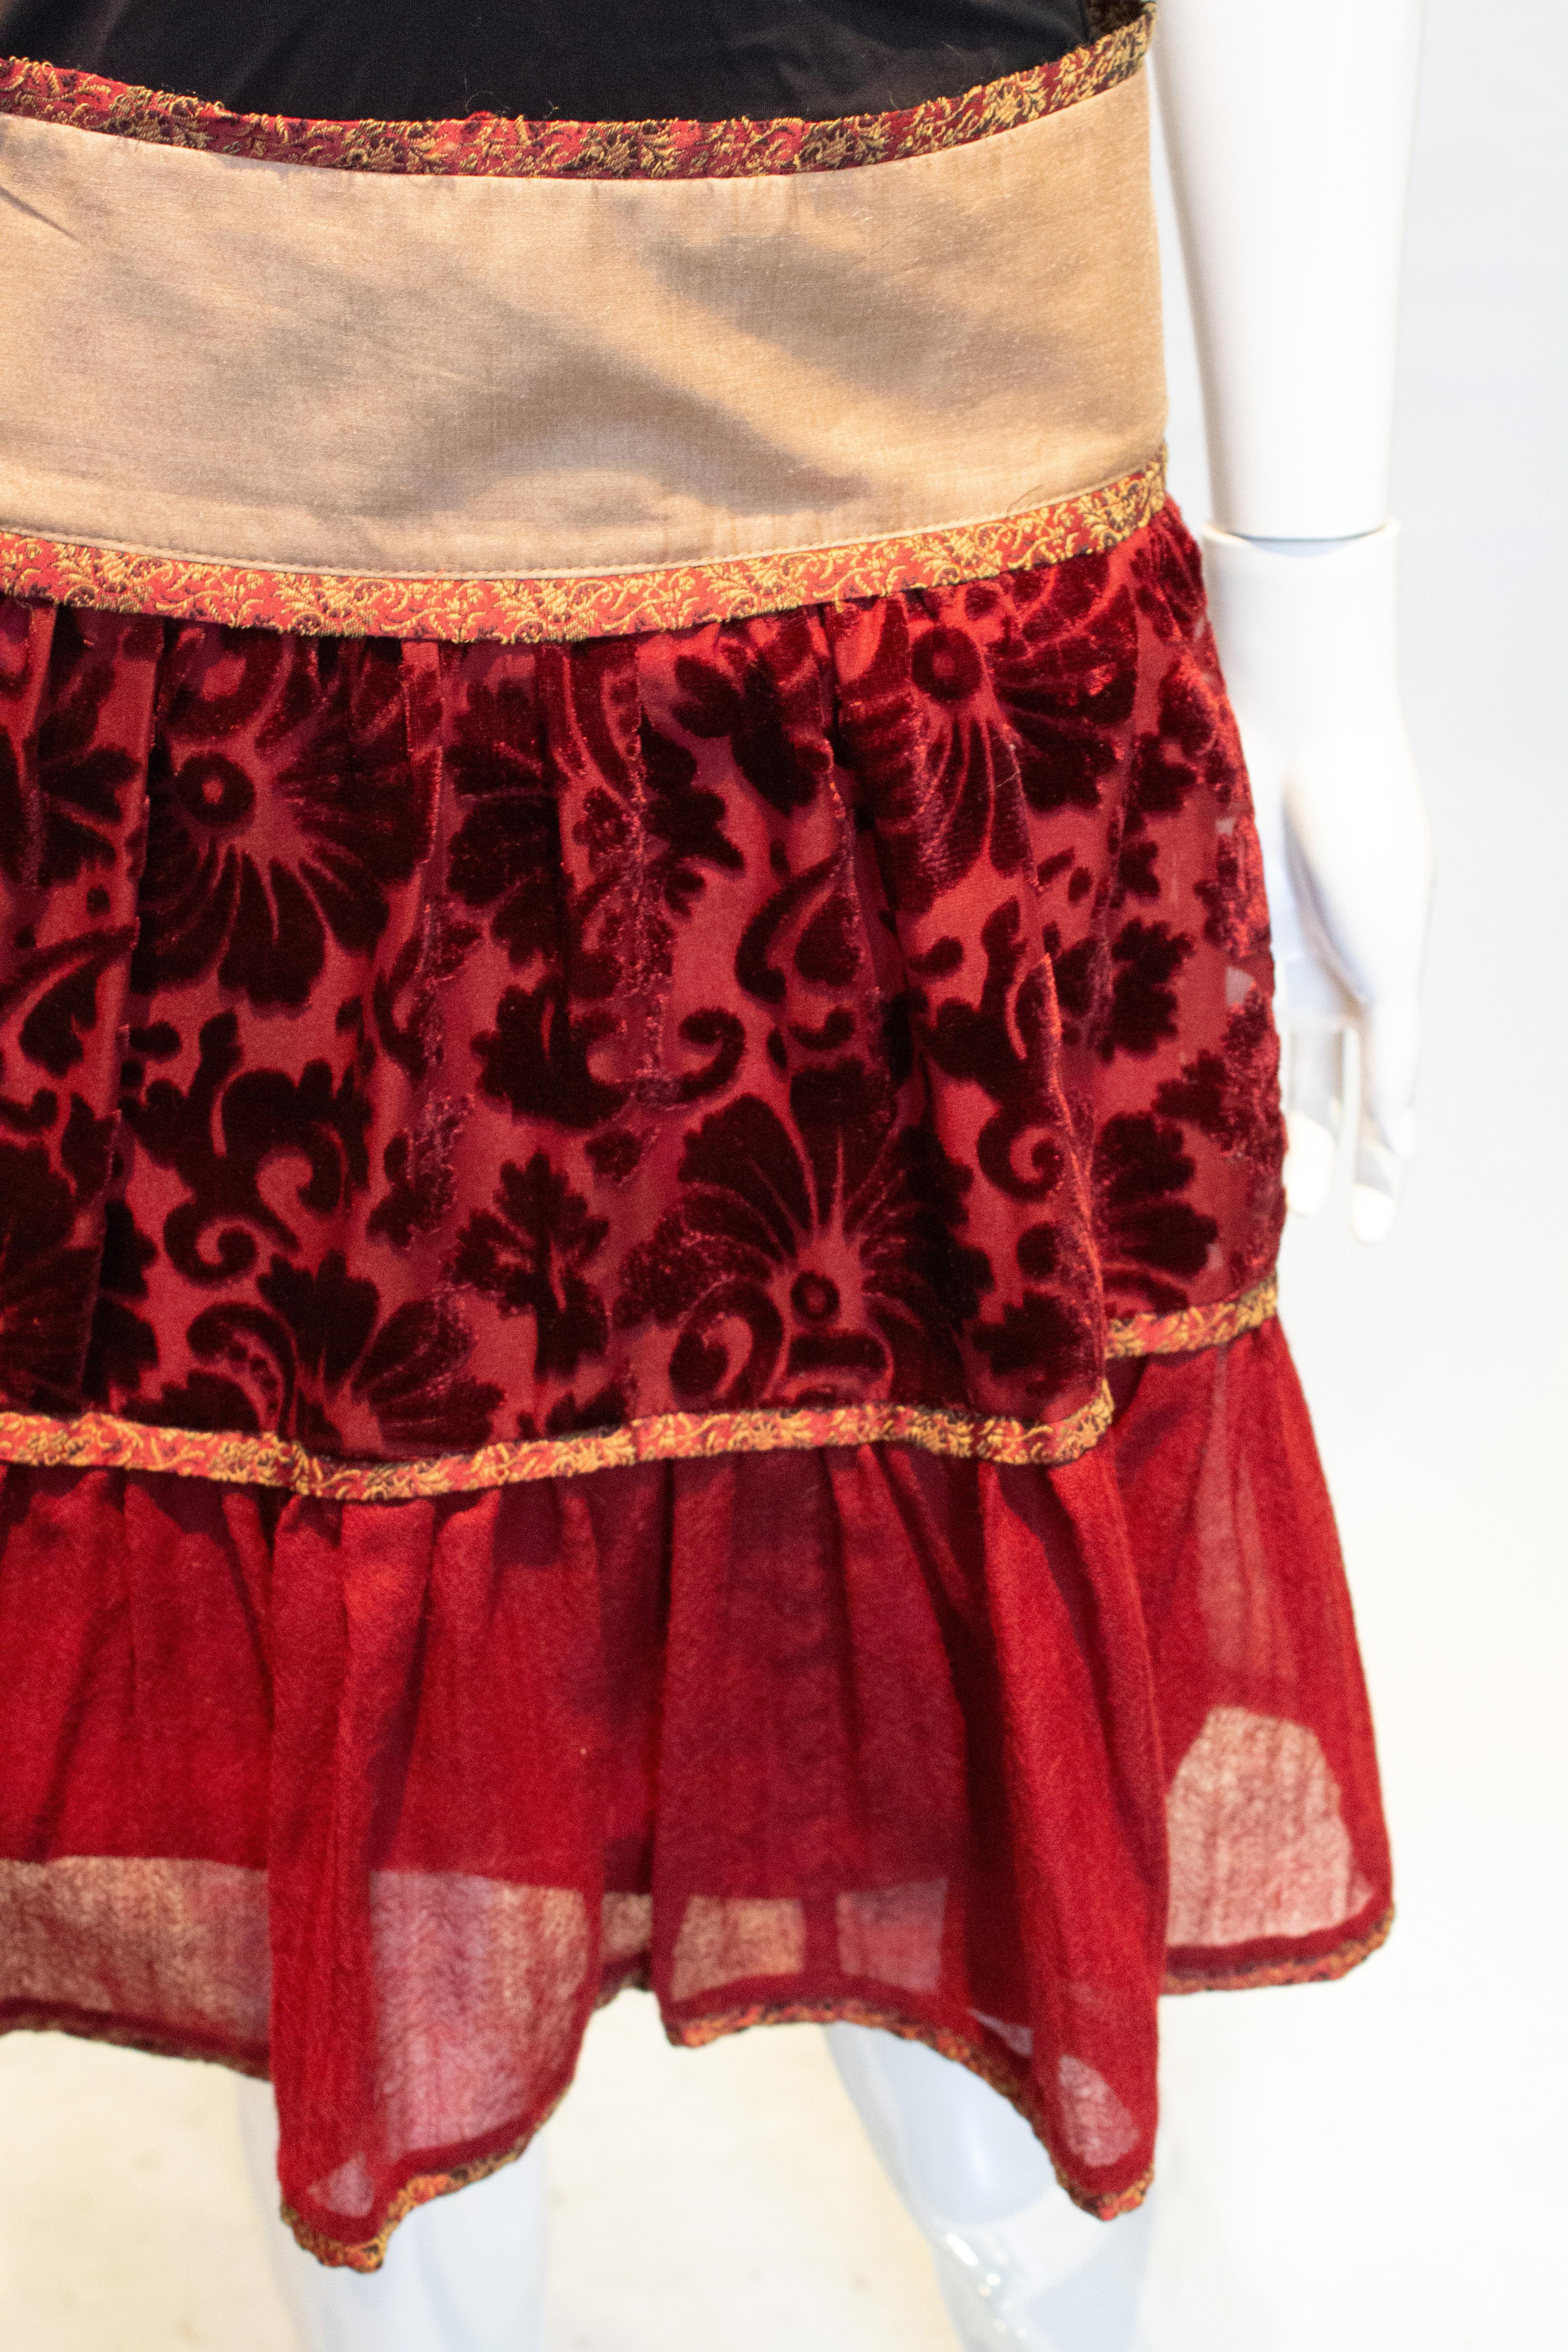 Alberta Ferretti Skirt in Plum Colours In Good Condition For Sale In London, GB